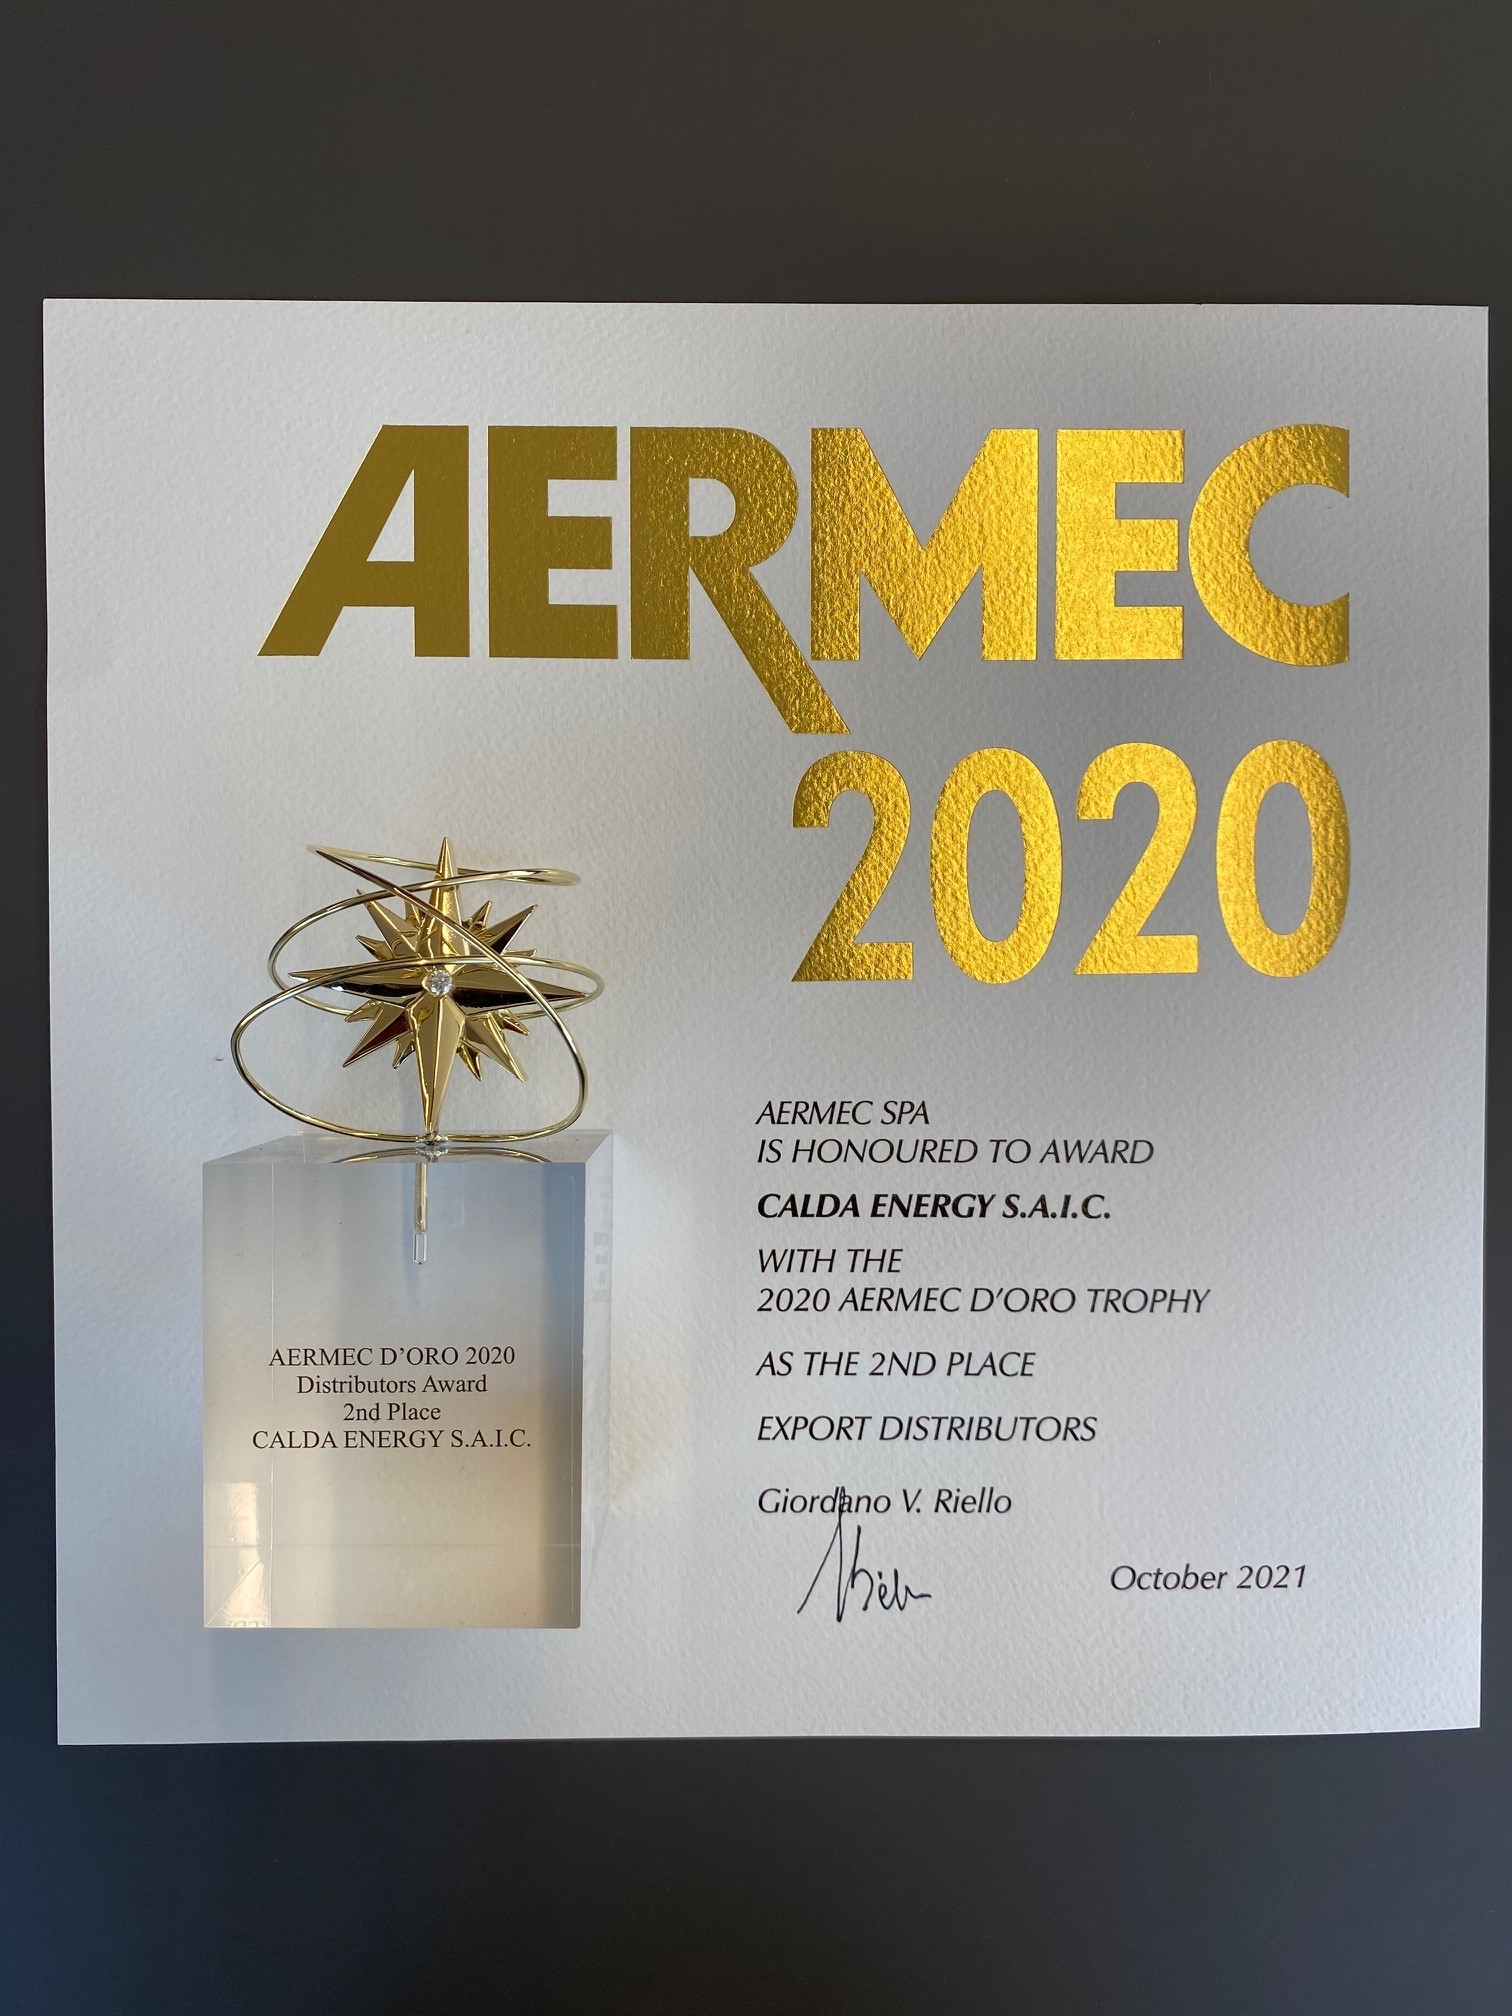 46th AERMEC D’ORO AWARD CEREMONY 2020